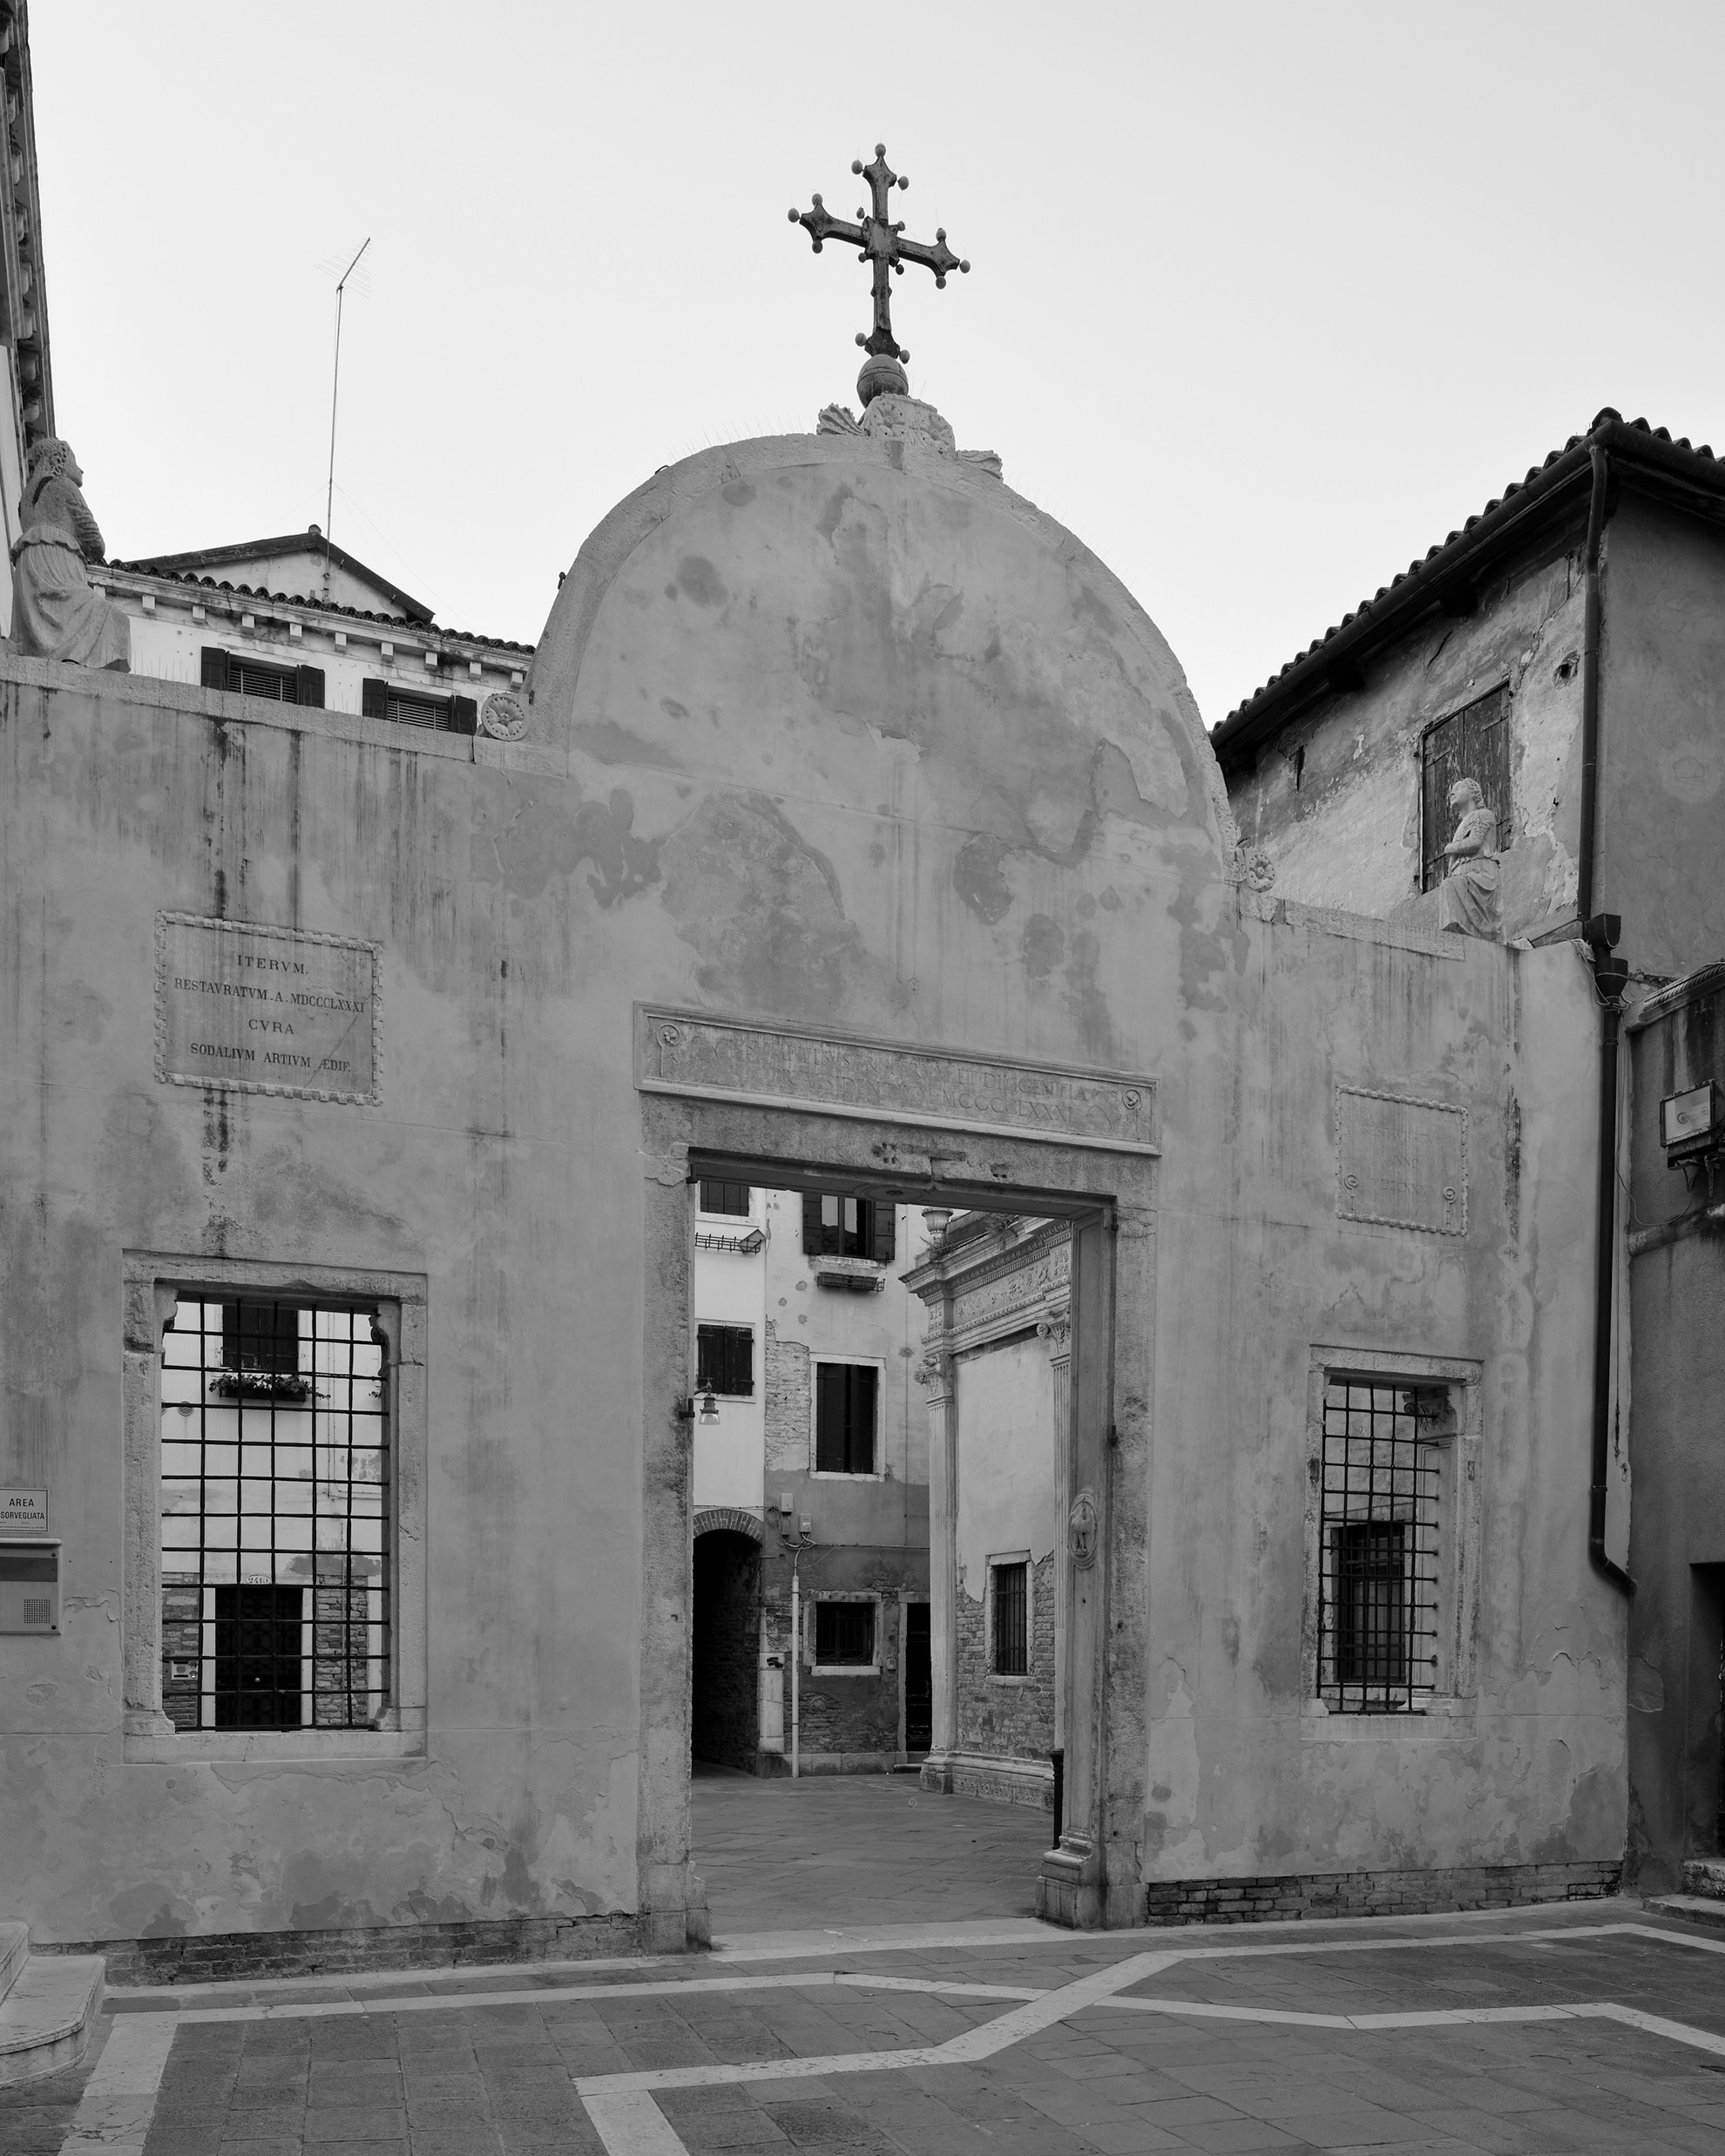 San Paolo, Campiello de la Scuola, 2019. Venice Urban Photo Project / Mario Peliti